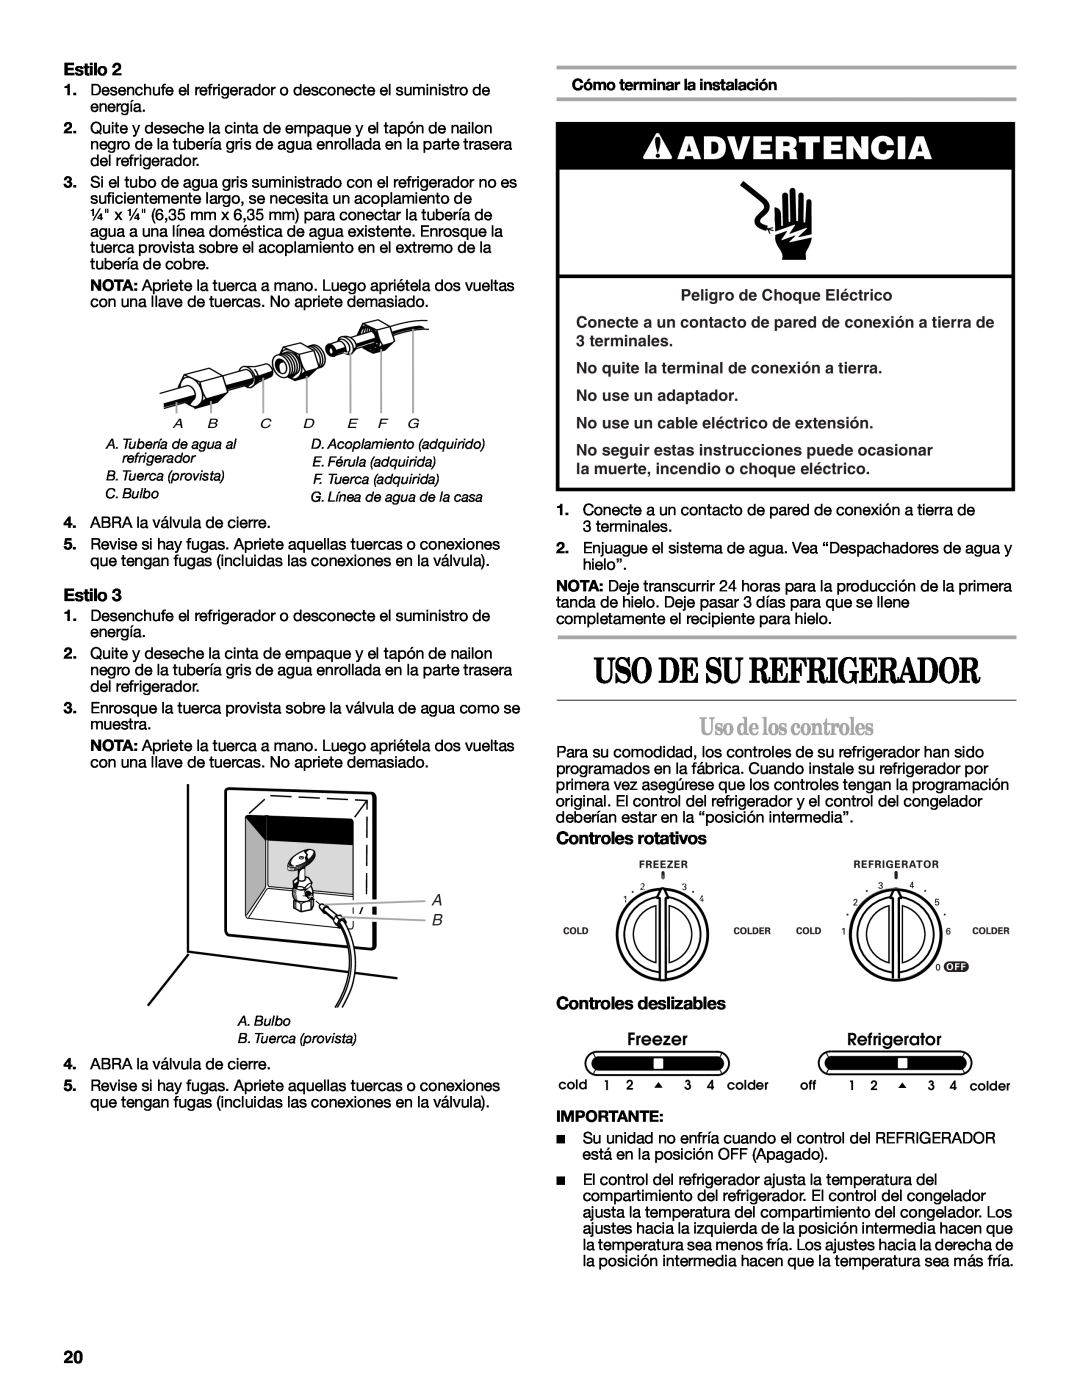 Whirlpool ED2JHGXRB00 Usodelos controles, Uso De Su Refrigerador, Advertencia, Estilo, Controles rotativos, Importante 